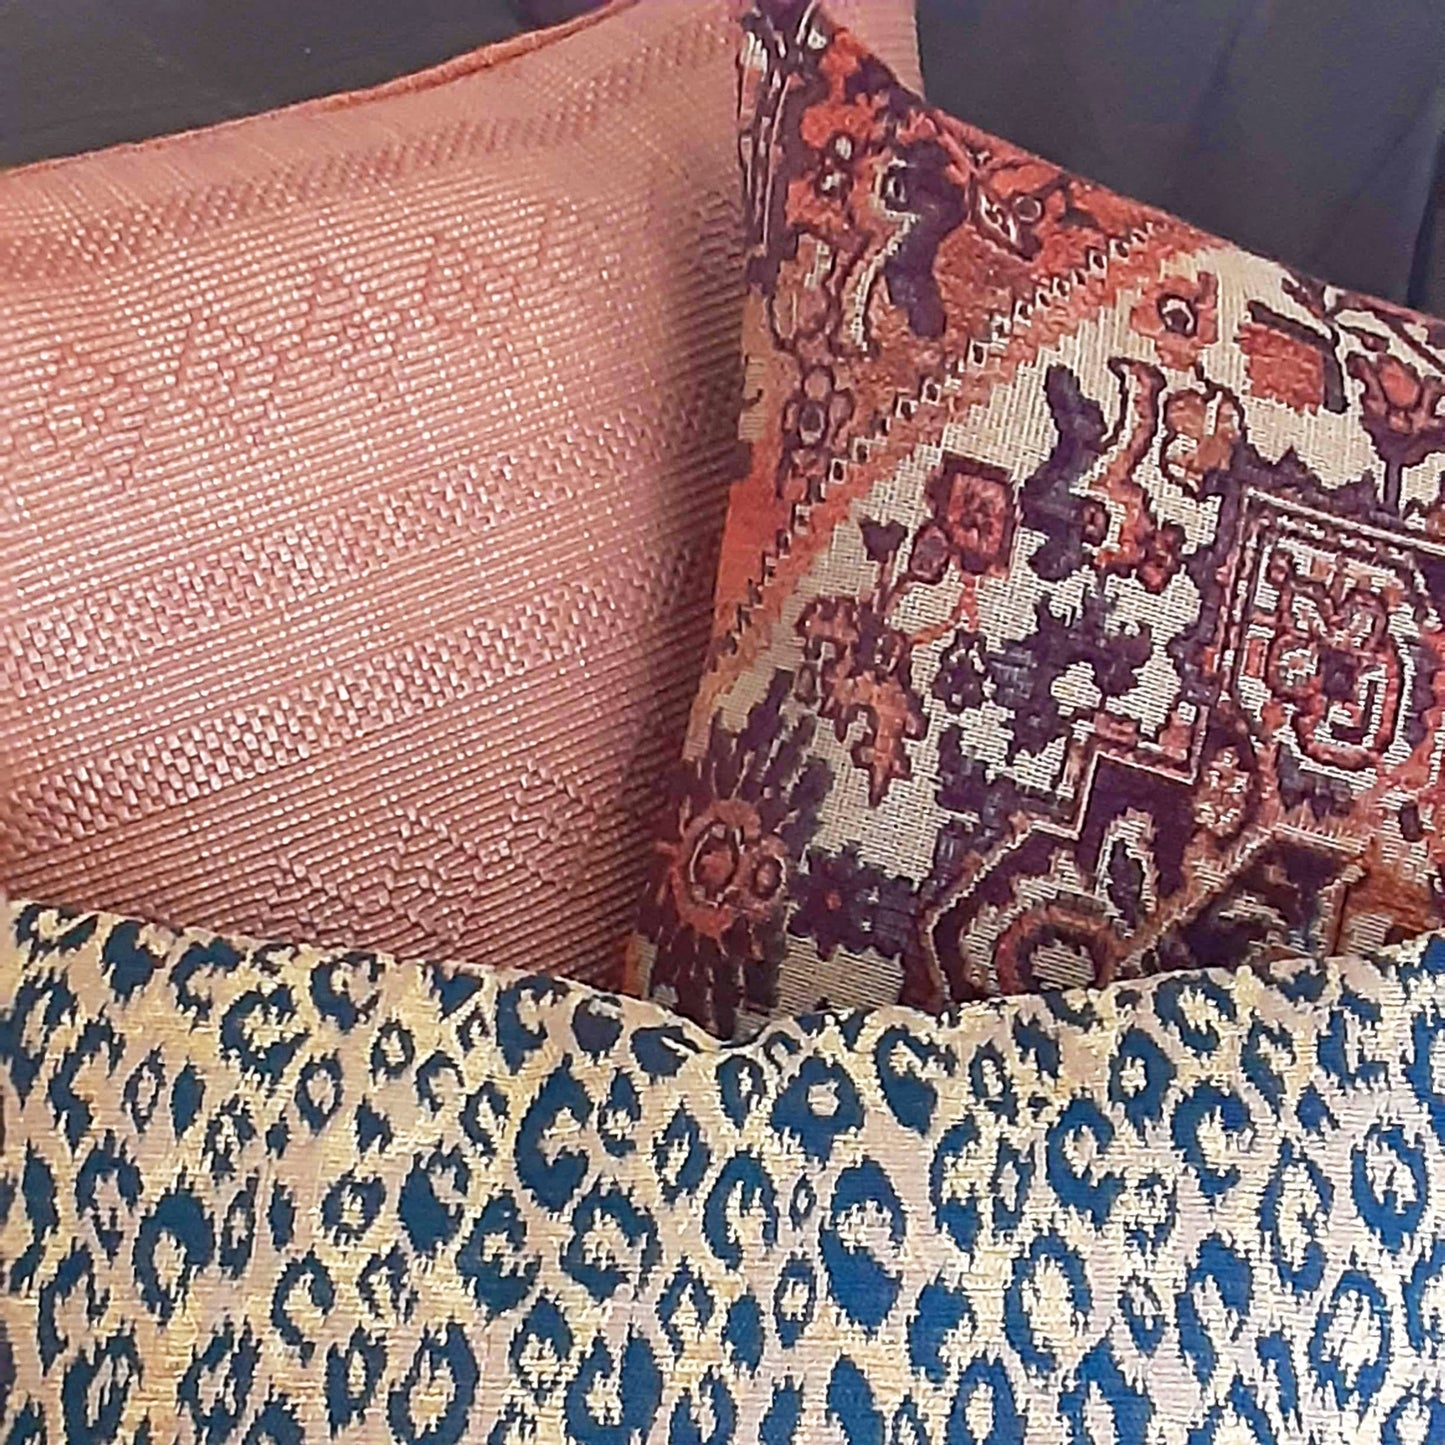 Bohemian Pillow Cover in Raffia Weave, Terracotta Clay Color, Tribal Safari Decor for Lodge or Cabin - 20x20